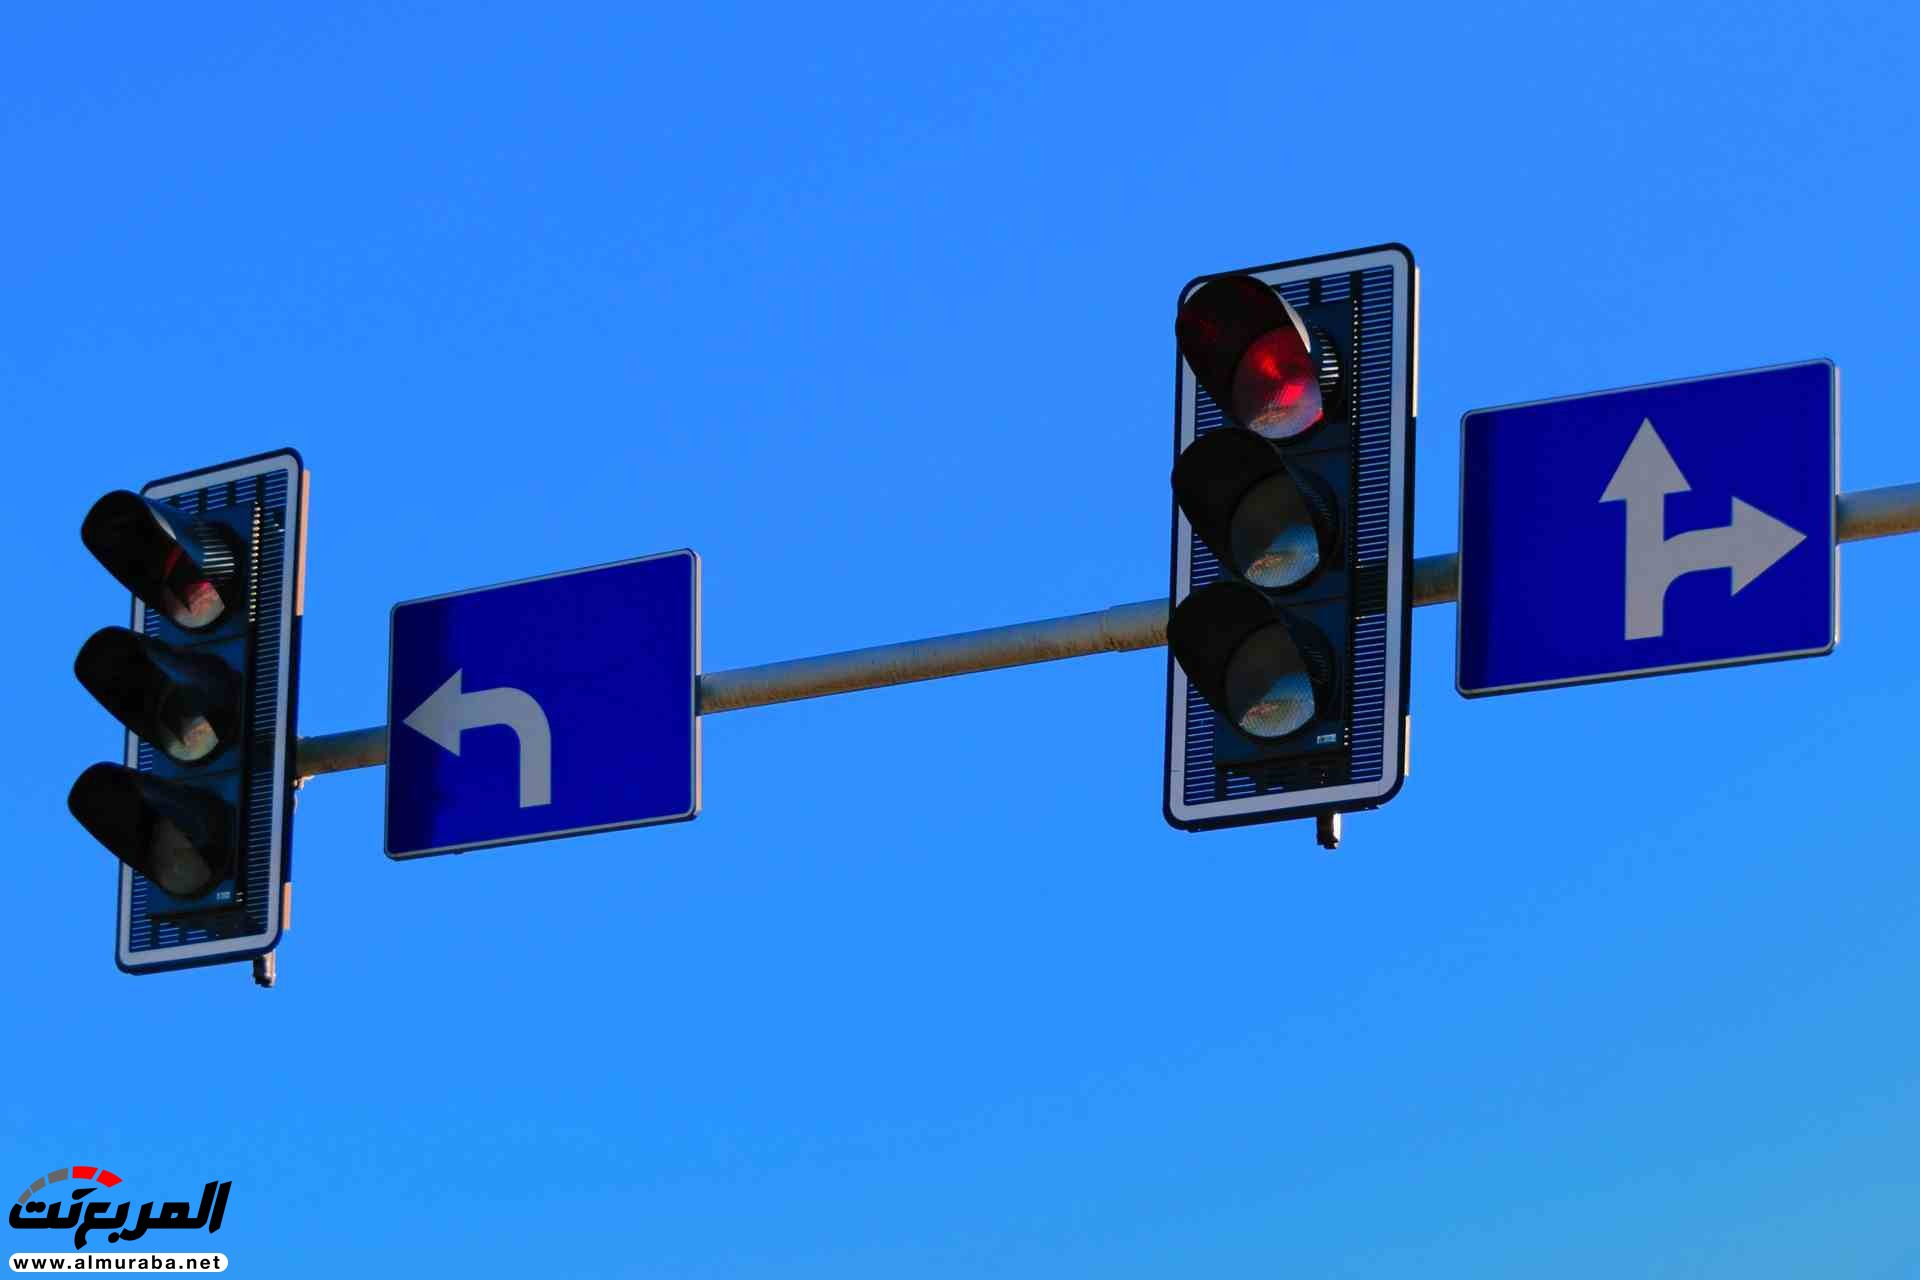 قانون جديد في ولاية أوهايو الأمريكية يسمح باجتياز السائق لإشارة المرور الحمراء